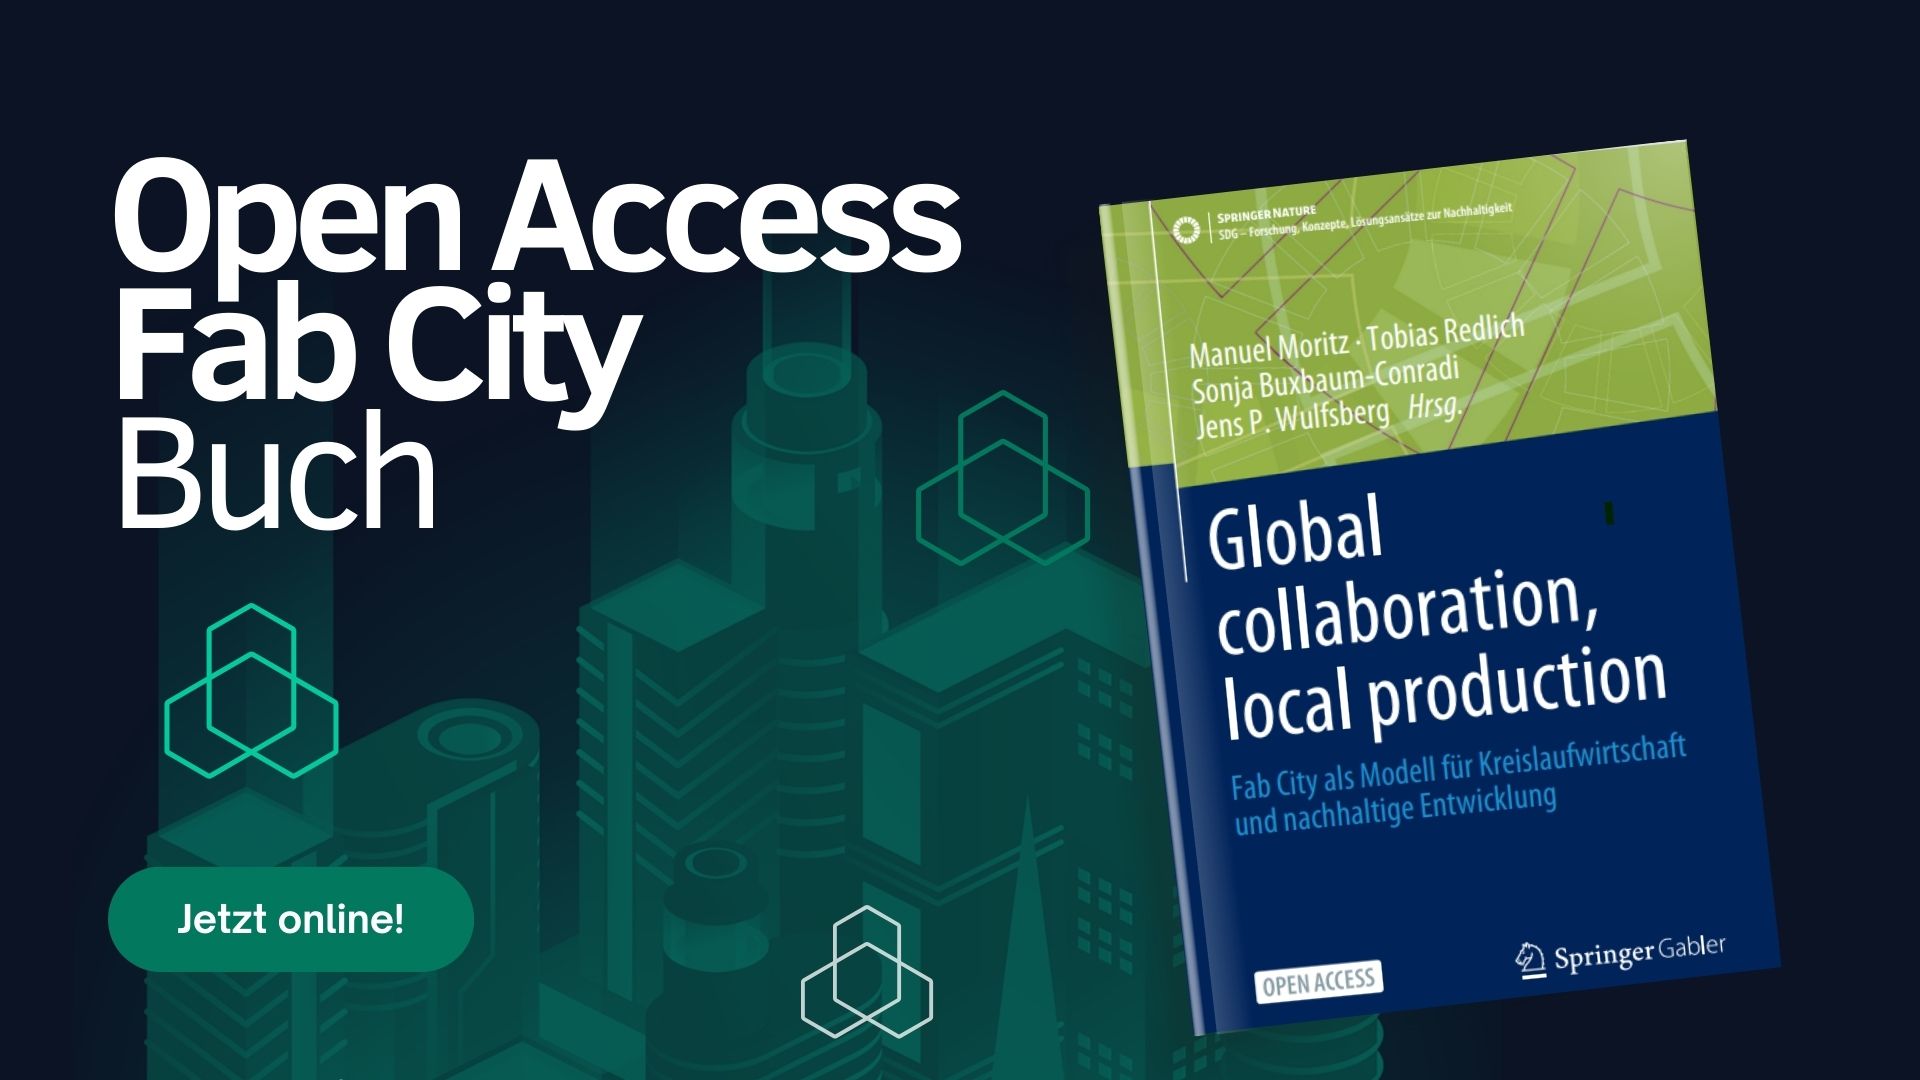 Du betrachtest gerade Neue Buch-Veröffentlichung über “Global collaboration, local production”